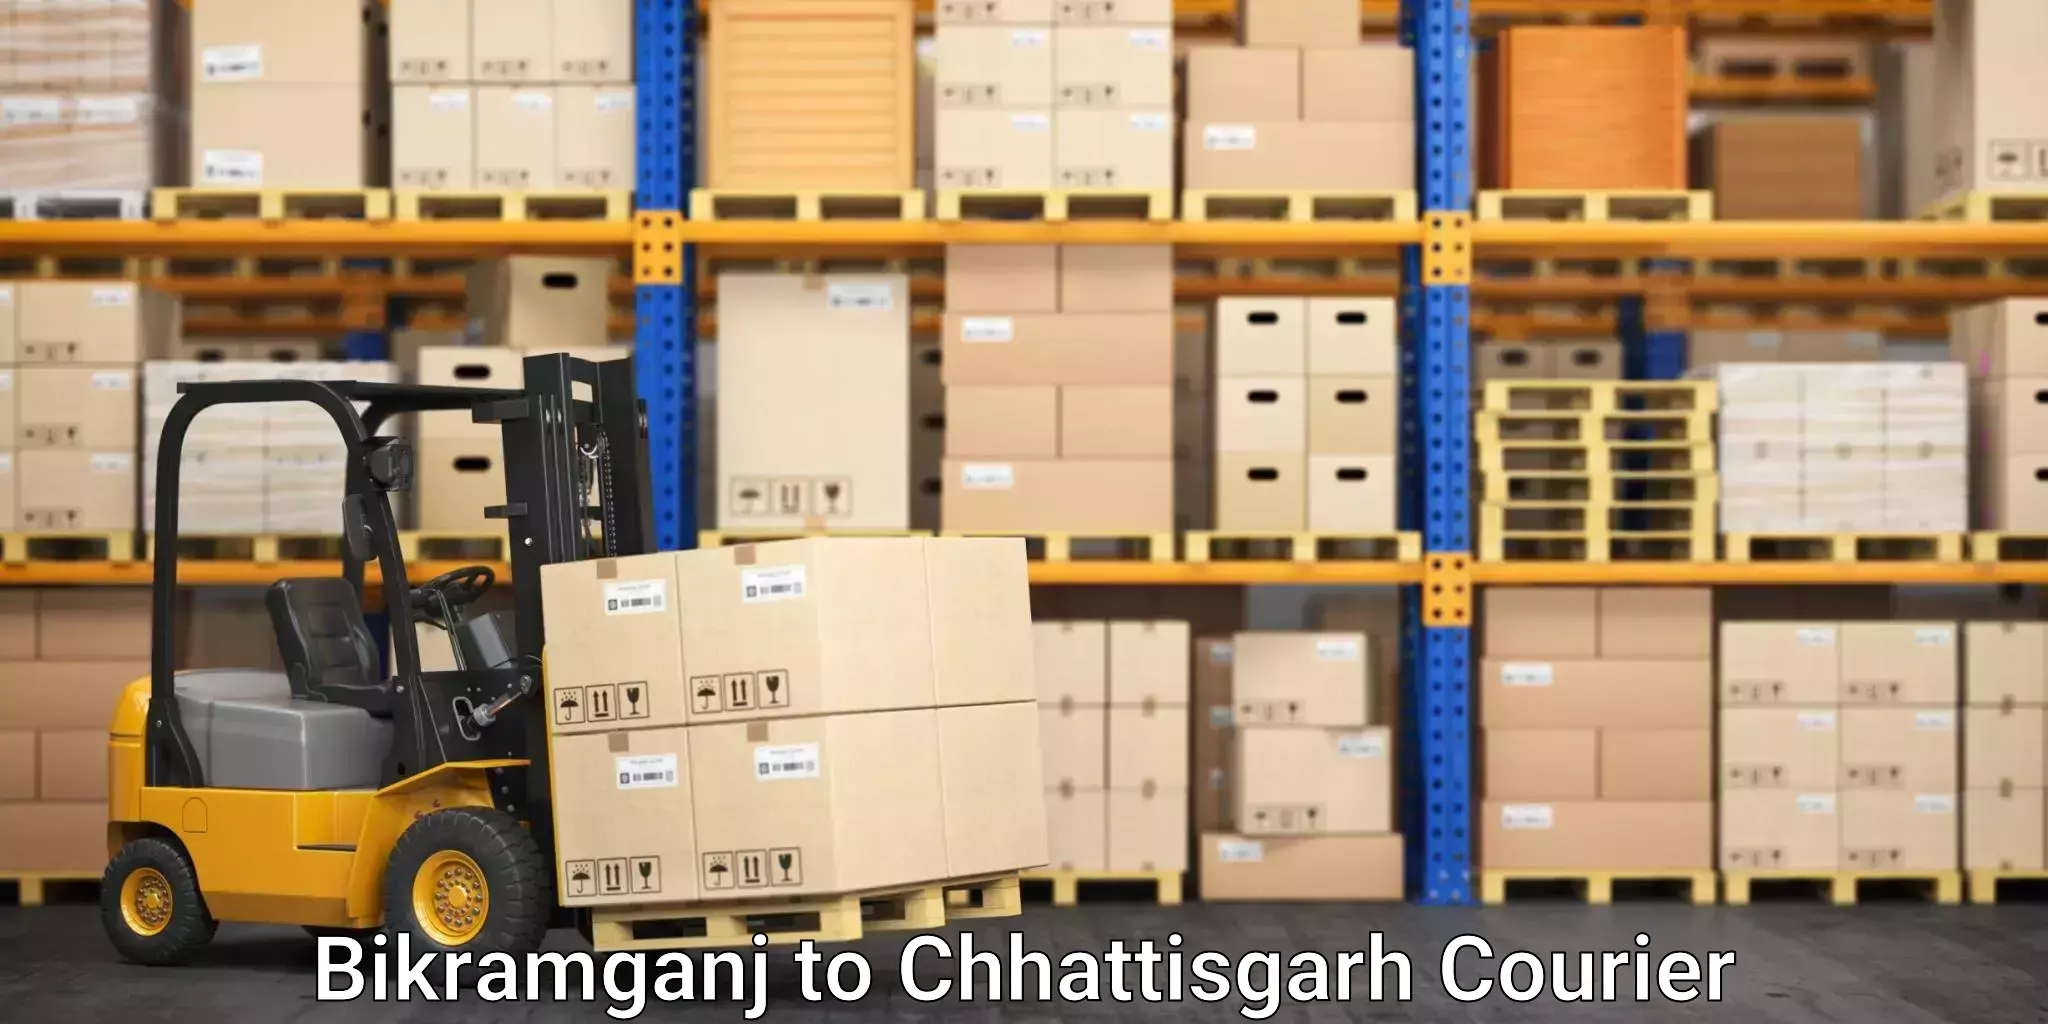 Household goods transport service in Bikramganj to Chhattisgarh